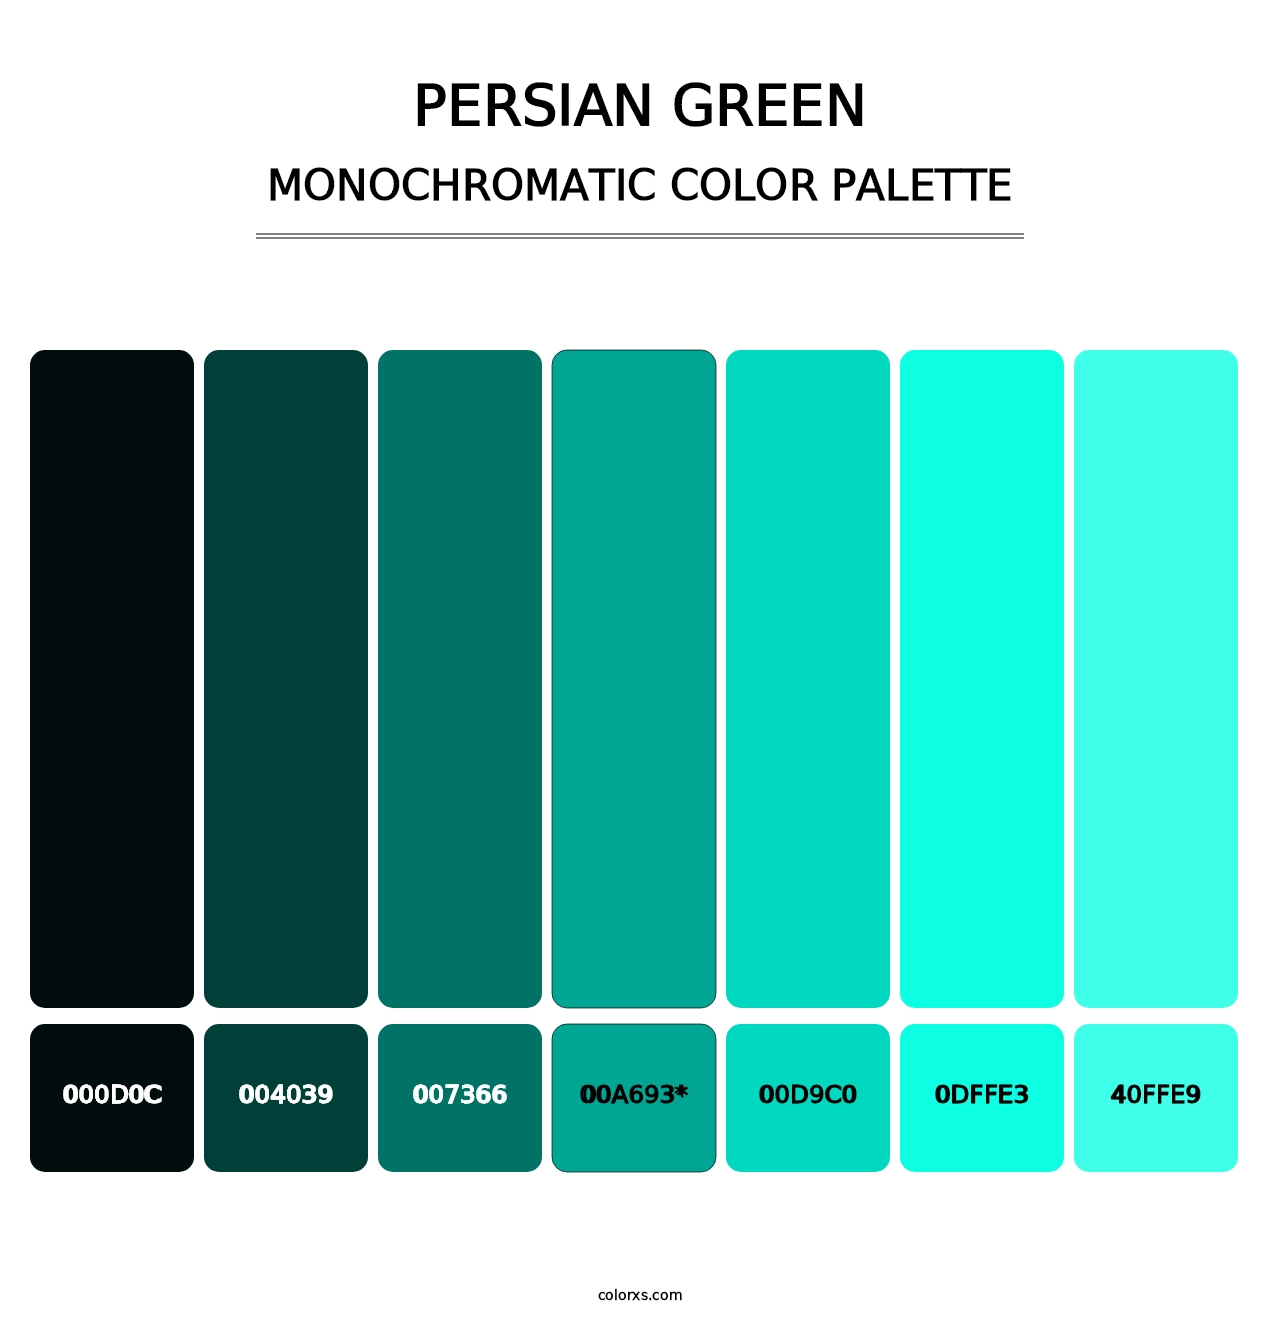 Persian Green - Monochromatic Color Palette